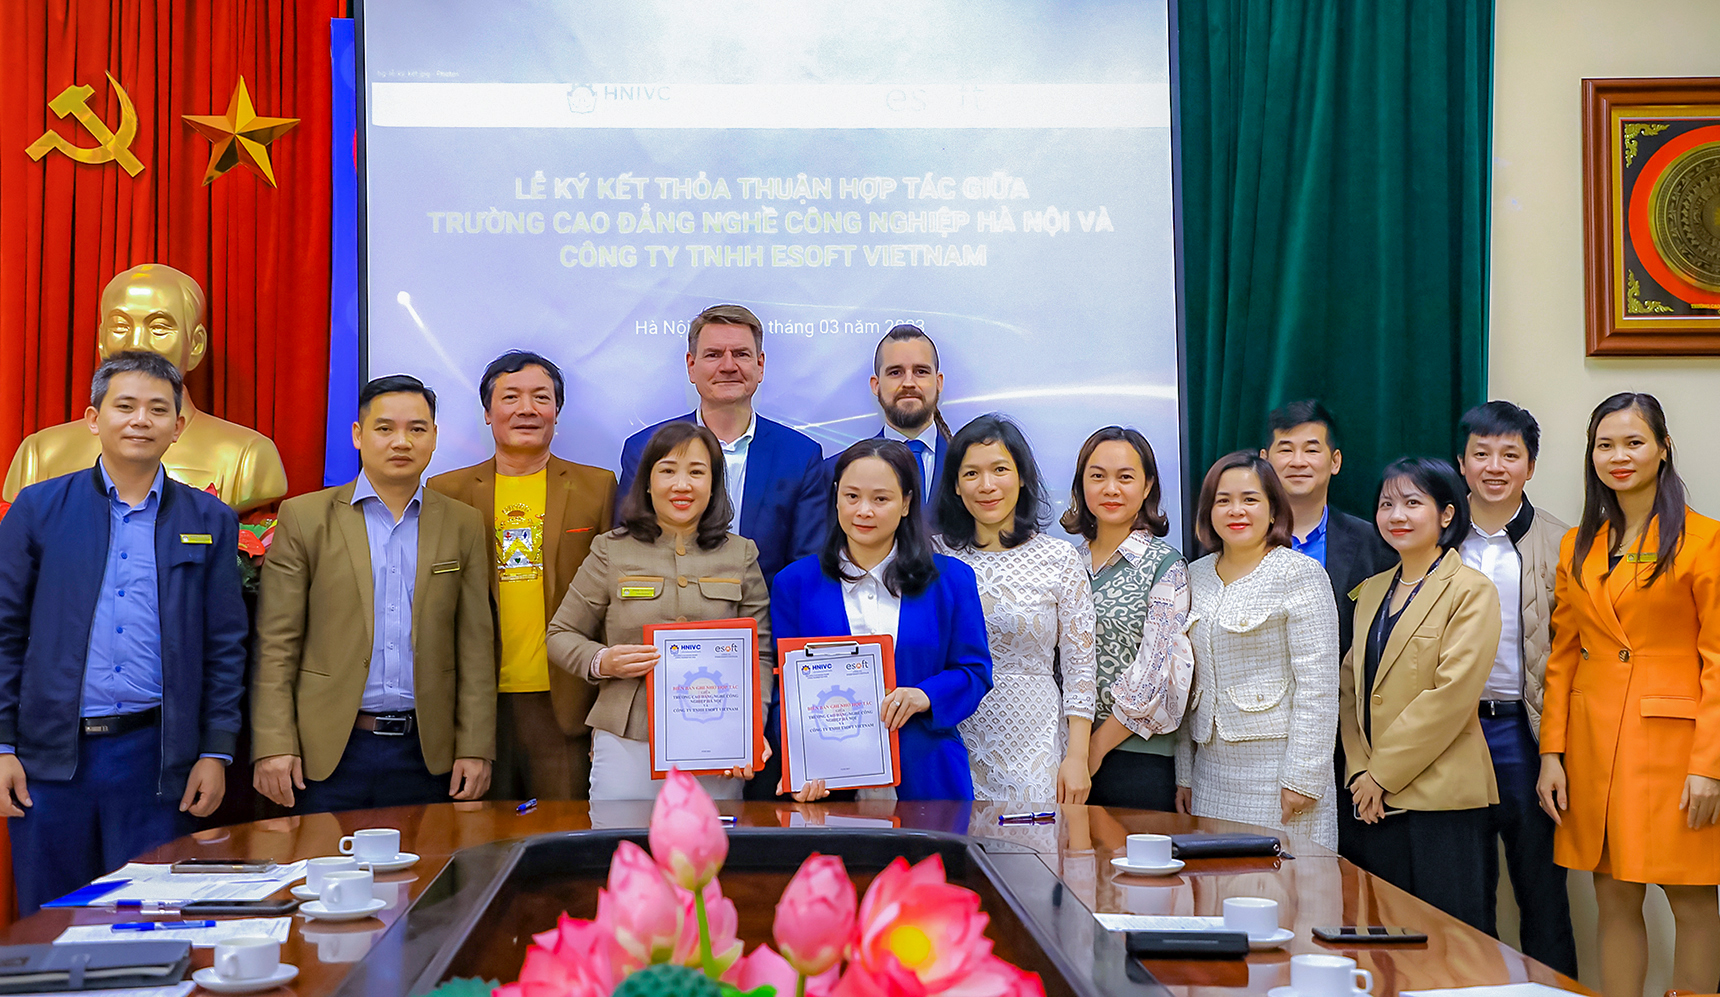 Lễ ký kết thoả thuận hợp tác giữa tài go88
 và công ty tnhh esoft vietnam